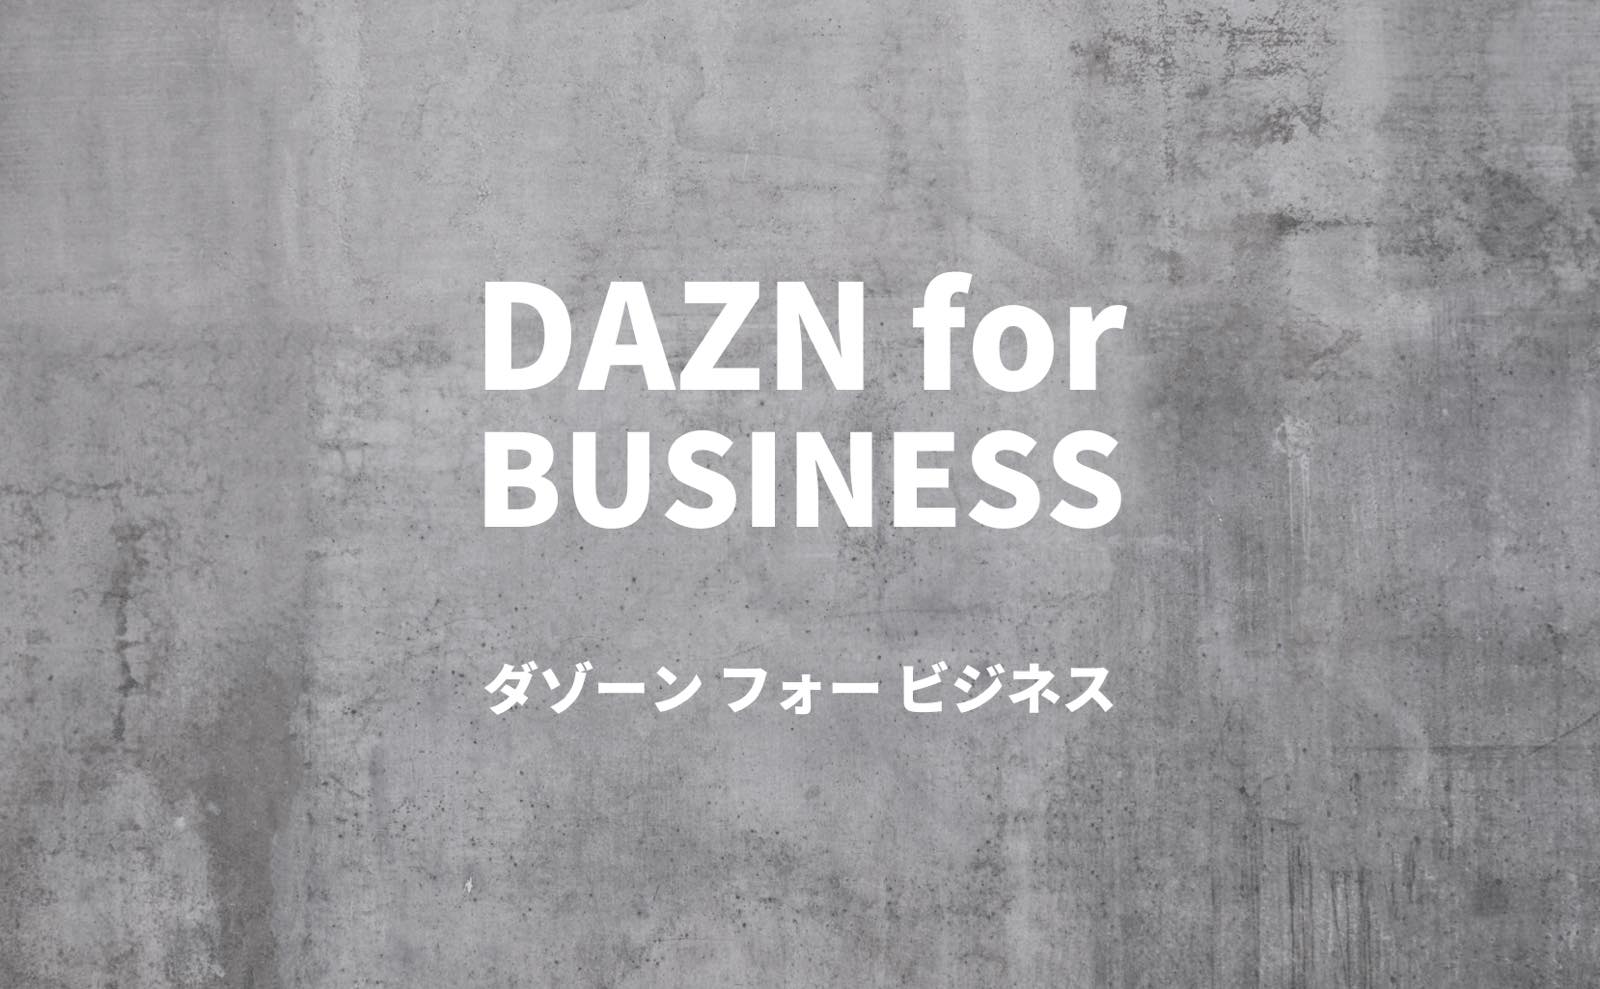 DAZN for BUSINESS ダゾーン フォー ビジネス